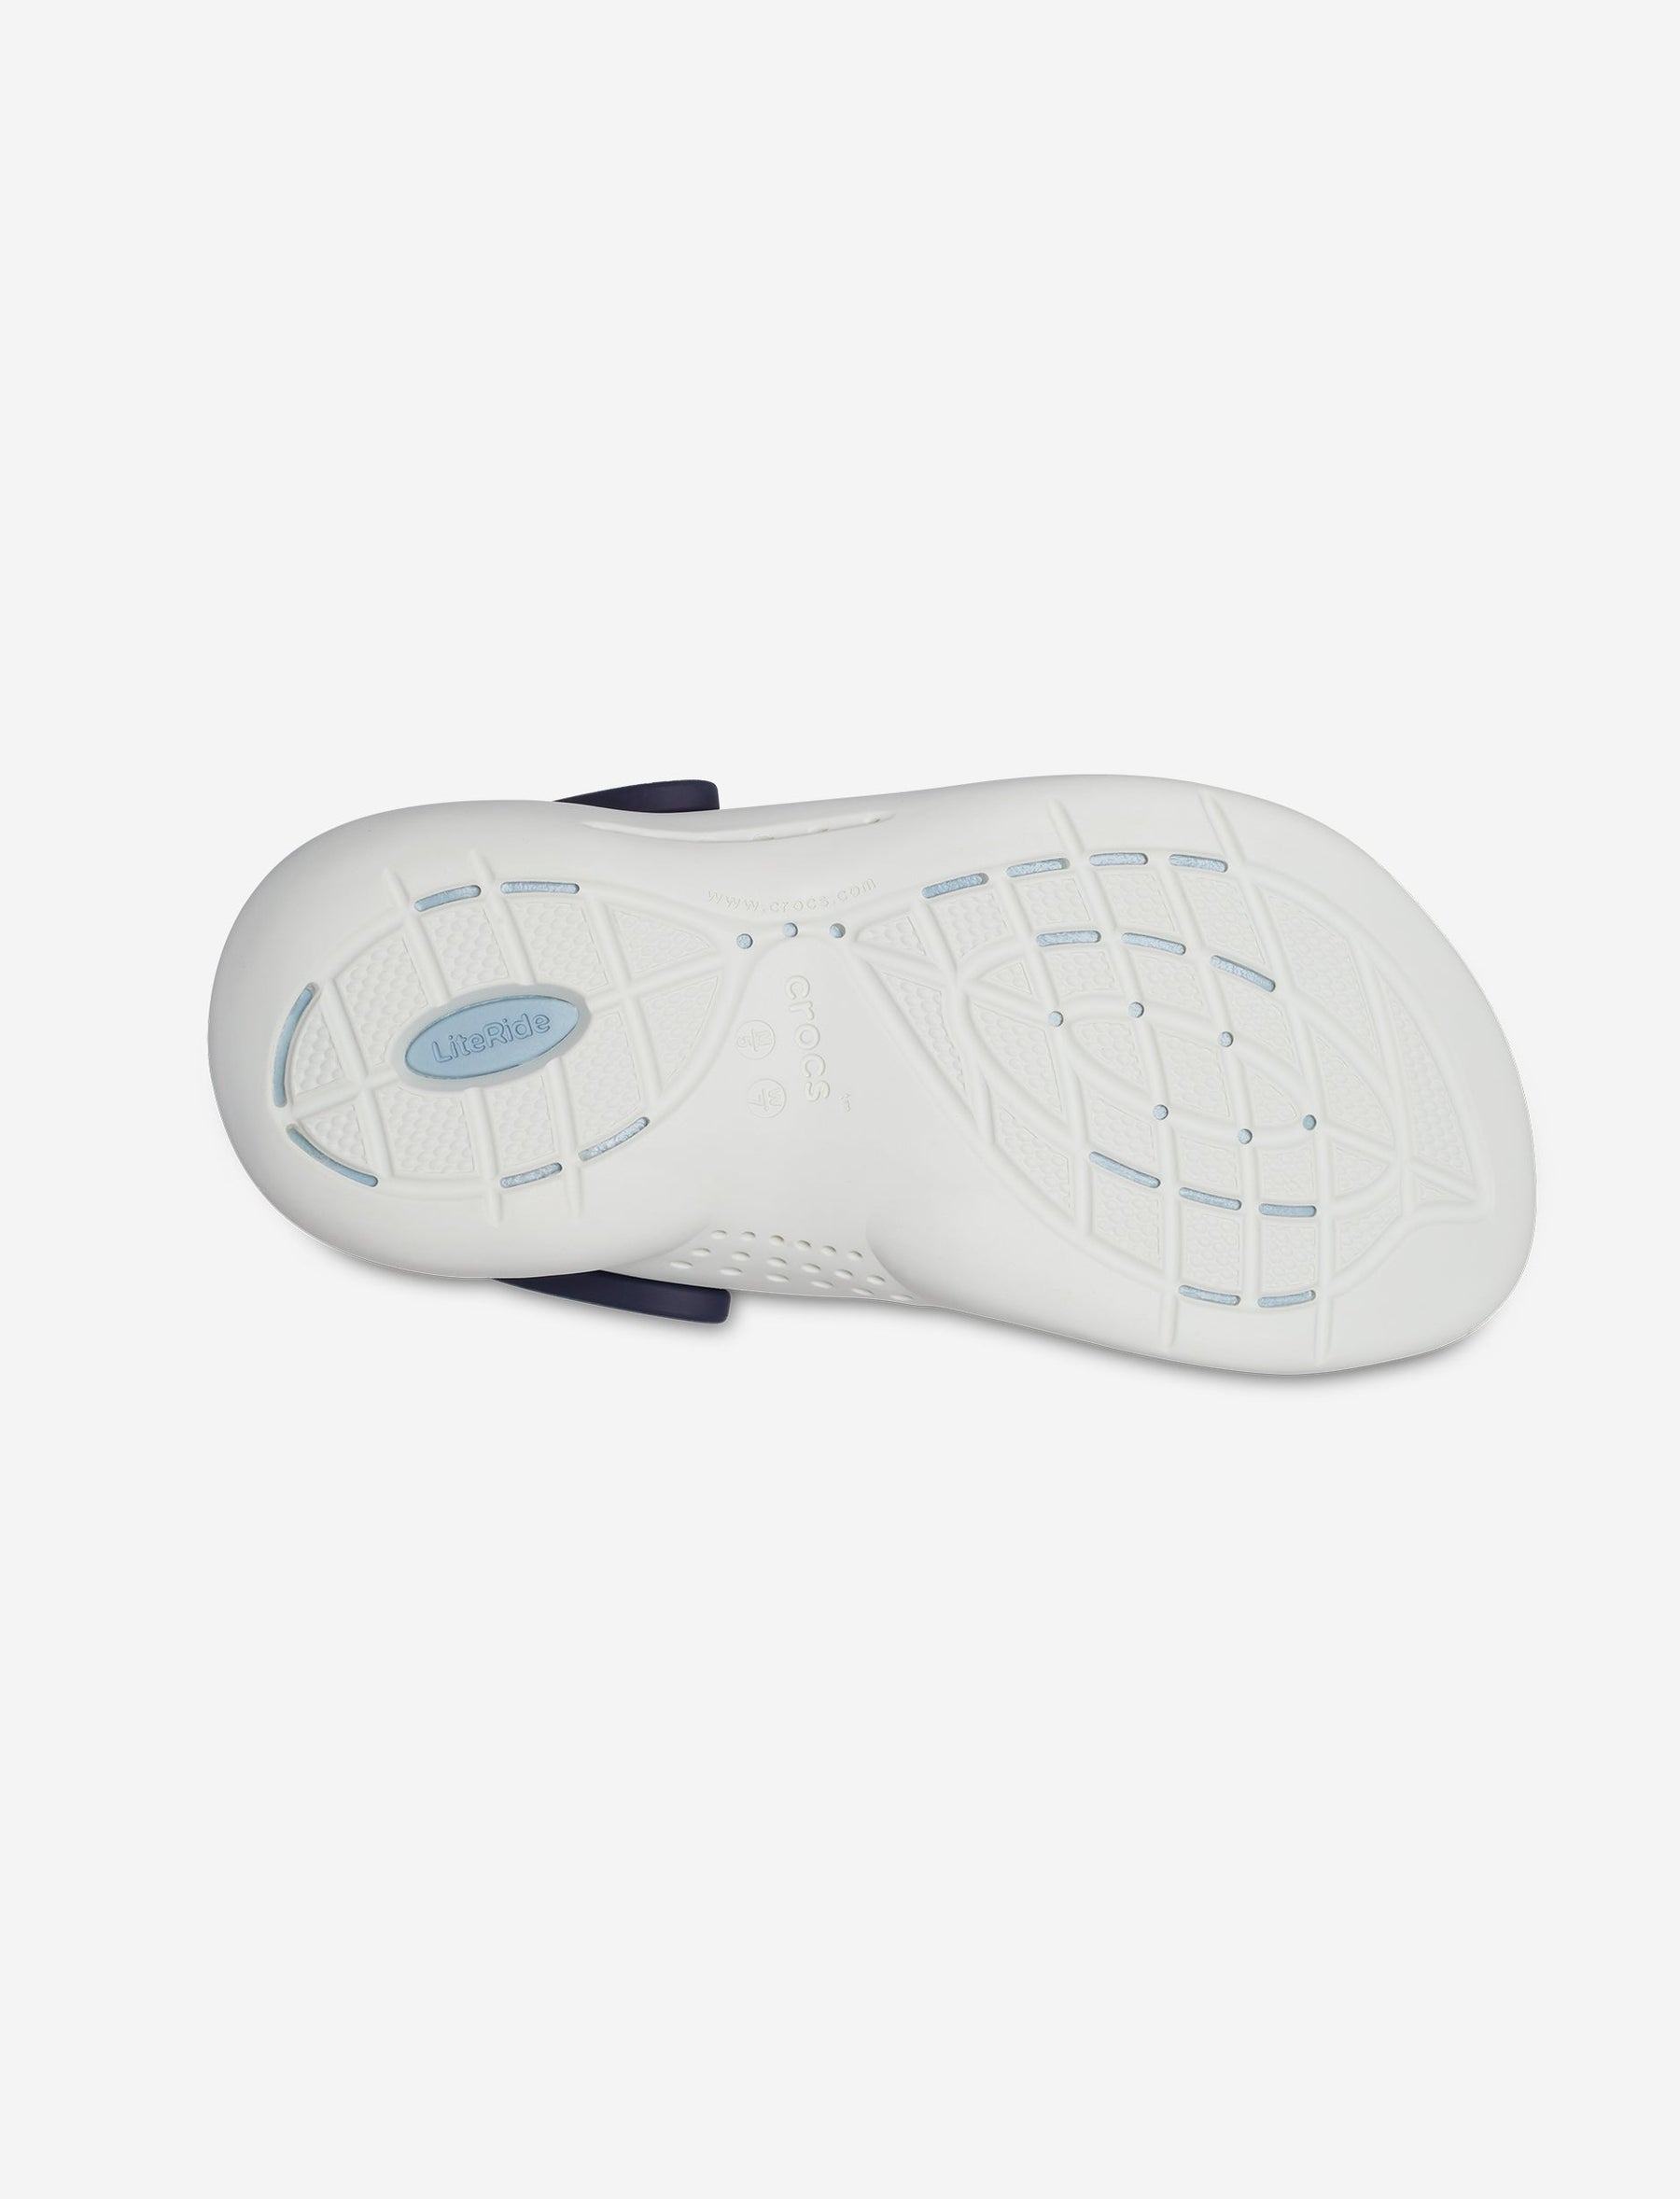 Crocs LiteRide 360 Clog - כפכפי קרוקס לייט-רייד בצבע נייבי/כחול אפור-Crocs-43-44-נאקו